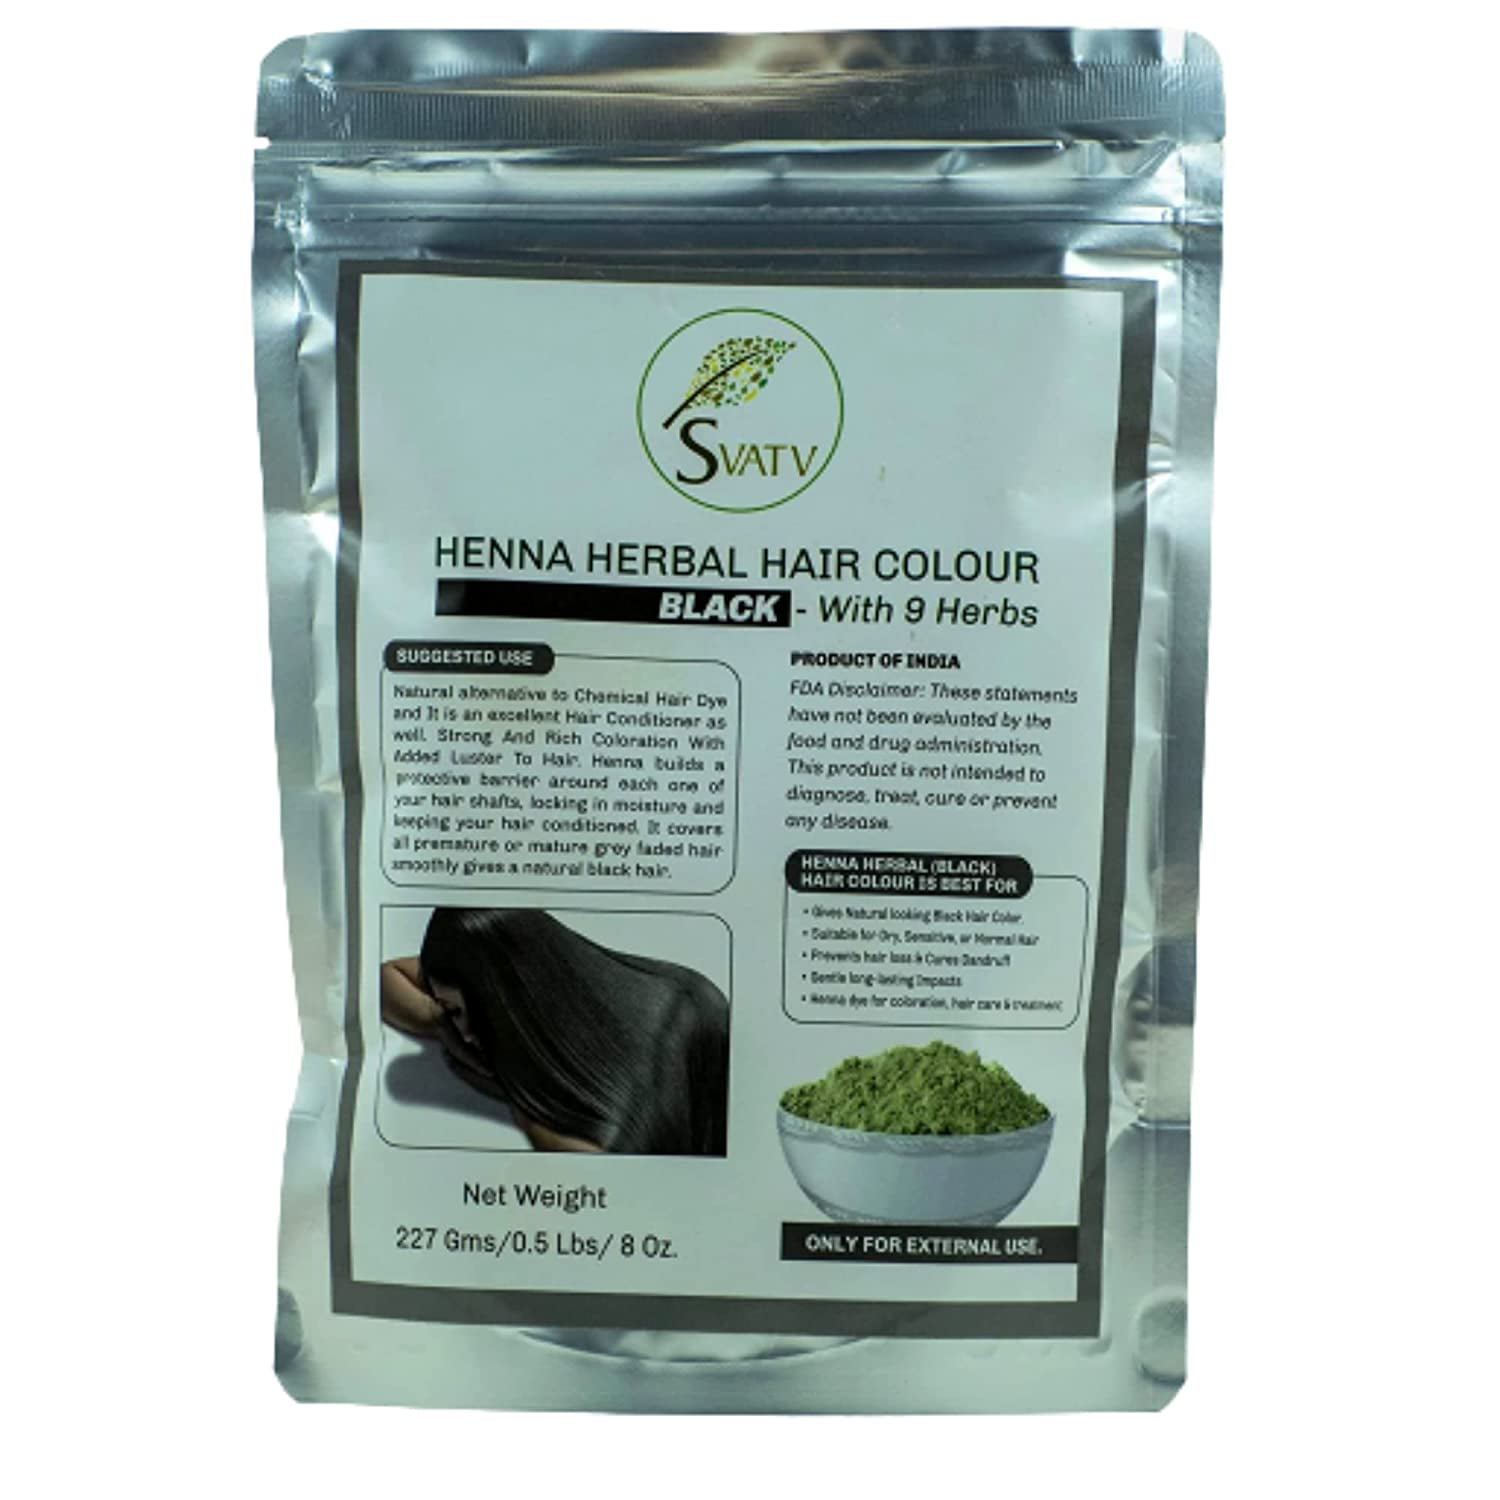 SVATV Black Henna Hair Colour with Goodness of 9 Herbs | Black Henna Mehndi  for Hair, Make Hair Soft & Shiner Natural Hair Color for Men & Women 227g  ,08oz 